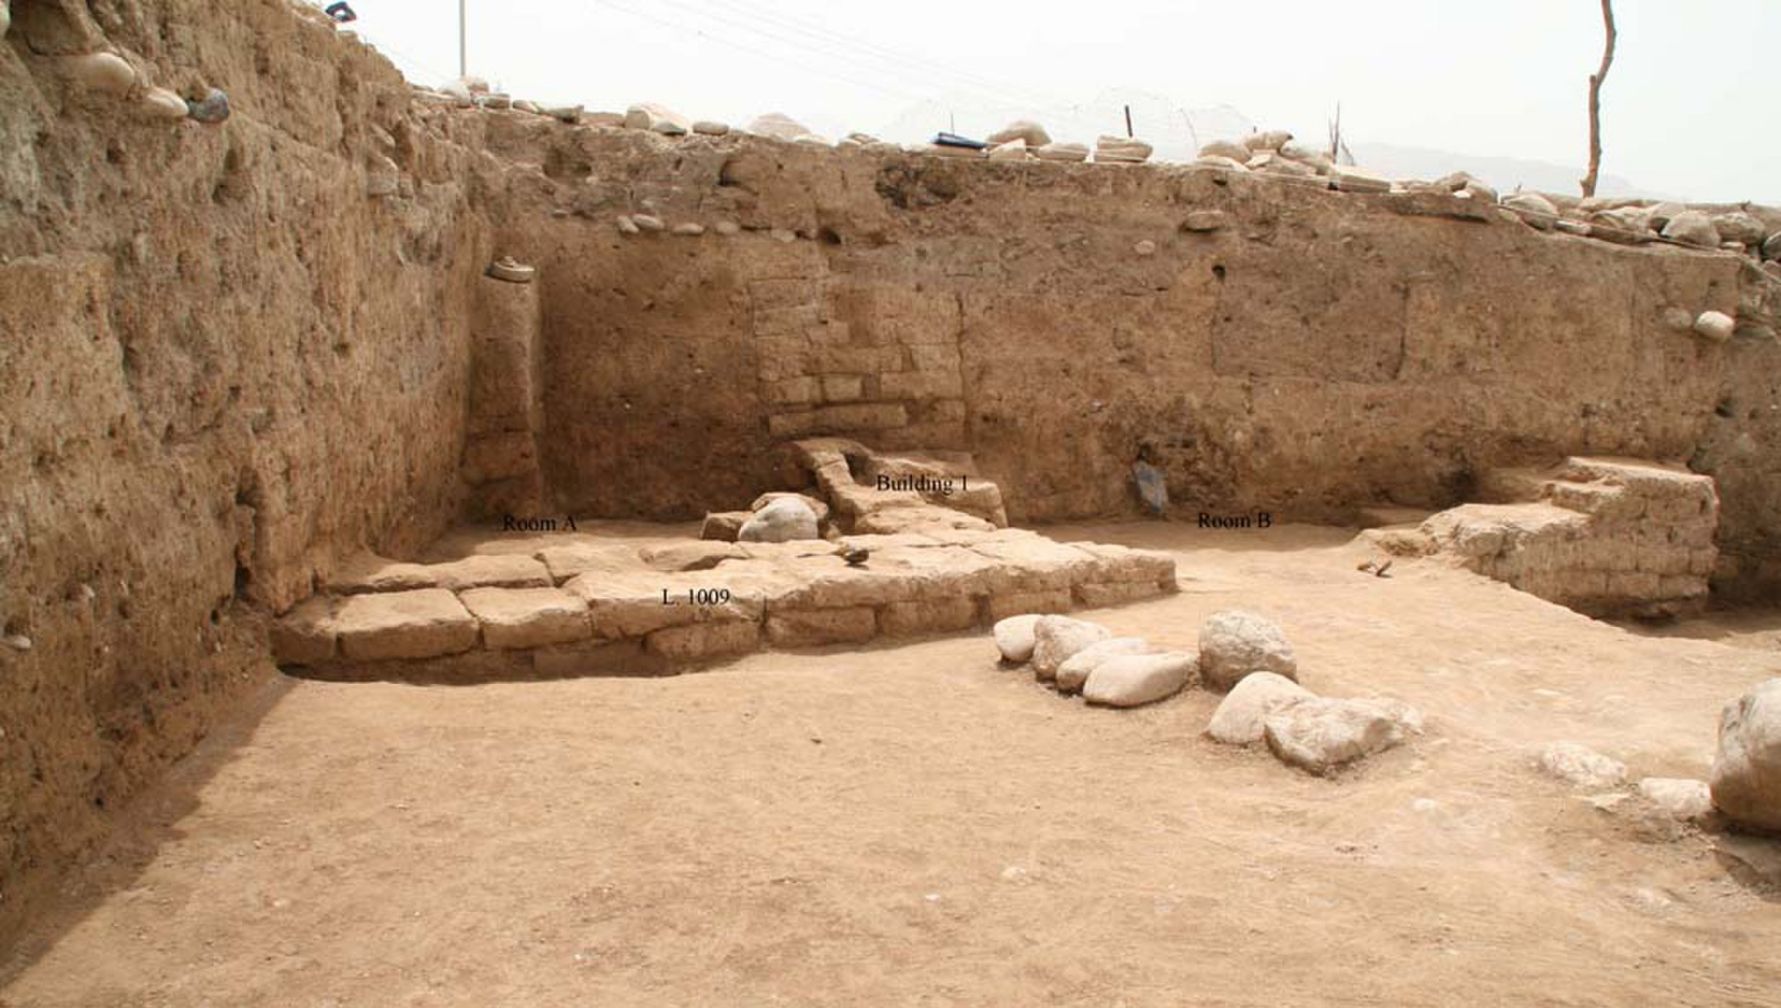 Des archéologues de la région du Kurdistan, dans le nord de l'Irak, ont découvert une ancienne ville appelée "Idu". Le site a été occupé dès la période néolithique, lorsque l'agriculture est apparue pour la première fois au Moyen-Orient, et la ville a atteint son apogée il y a entre 3,300 2,900 et 2,000 XNUMX ans. Le bâtiment montré ici est une structure domestique, avec au moins deux pièces, qui peut dater d'une époque relativement tardive dans la vie de la ville, peut-être il y a environ XNUMX XNUMX ans lorsque l'empire parthe contrôlait la région.